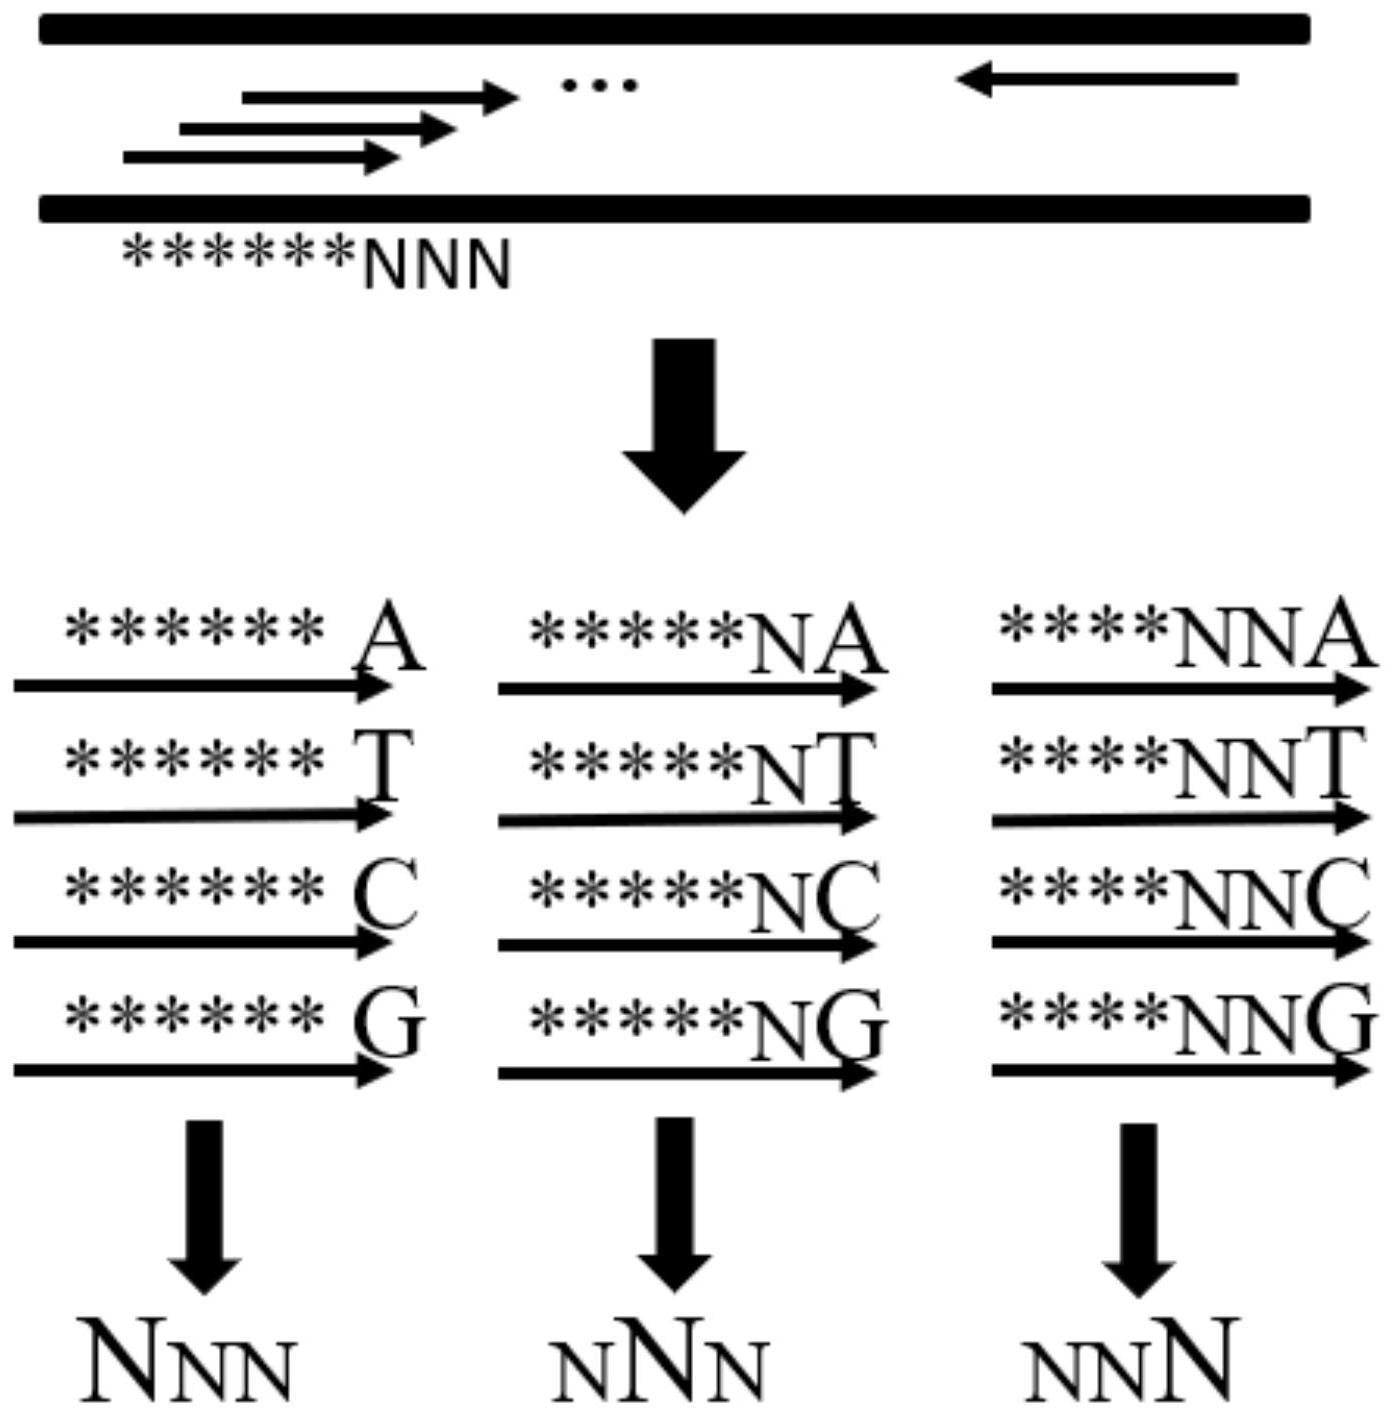 其方法包括:针对基因组连续n个突变位点,分别设计一组四个扩增引物